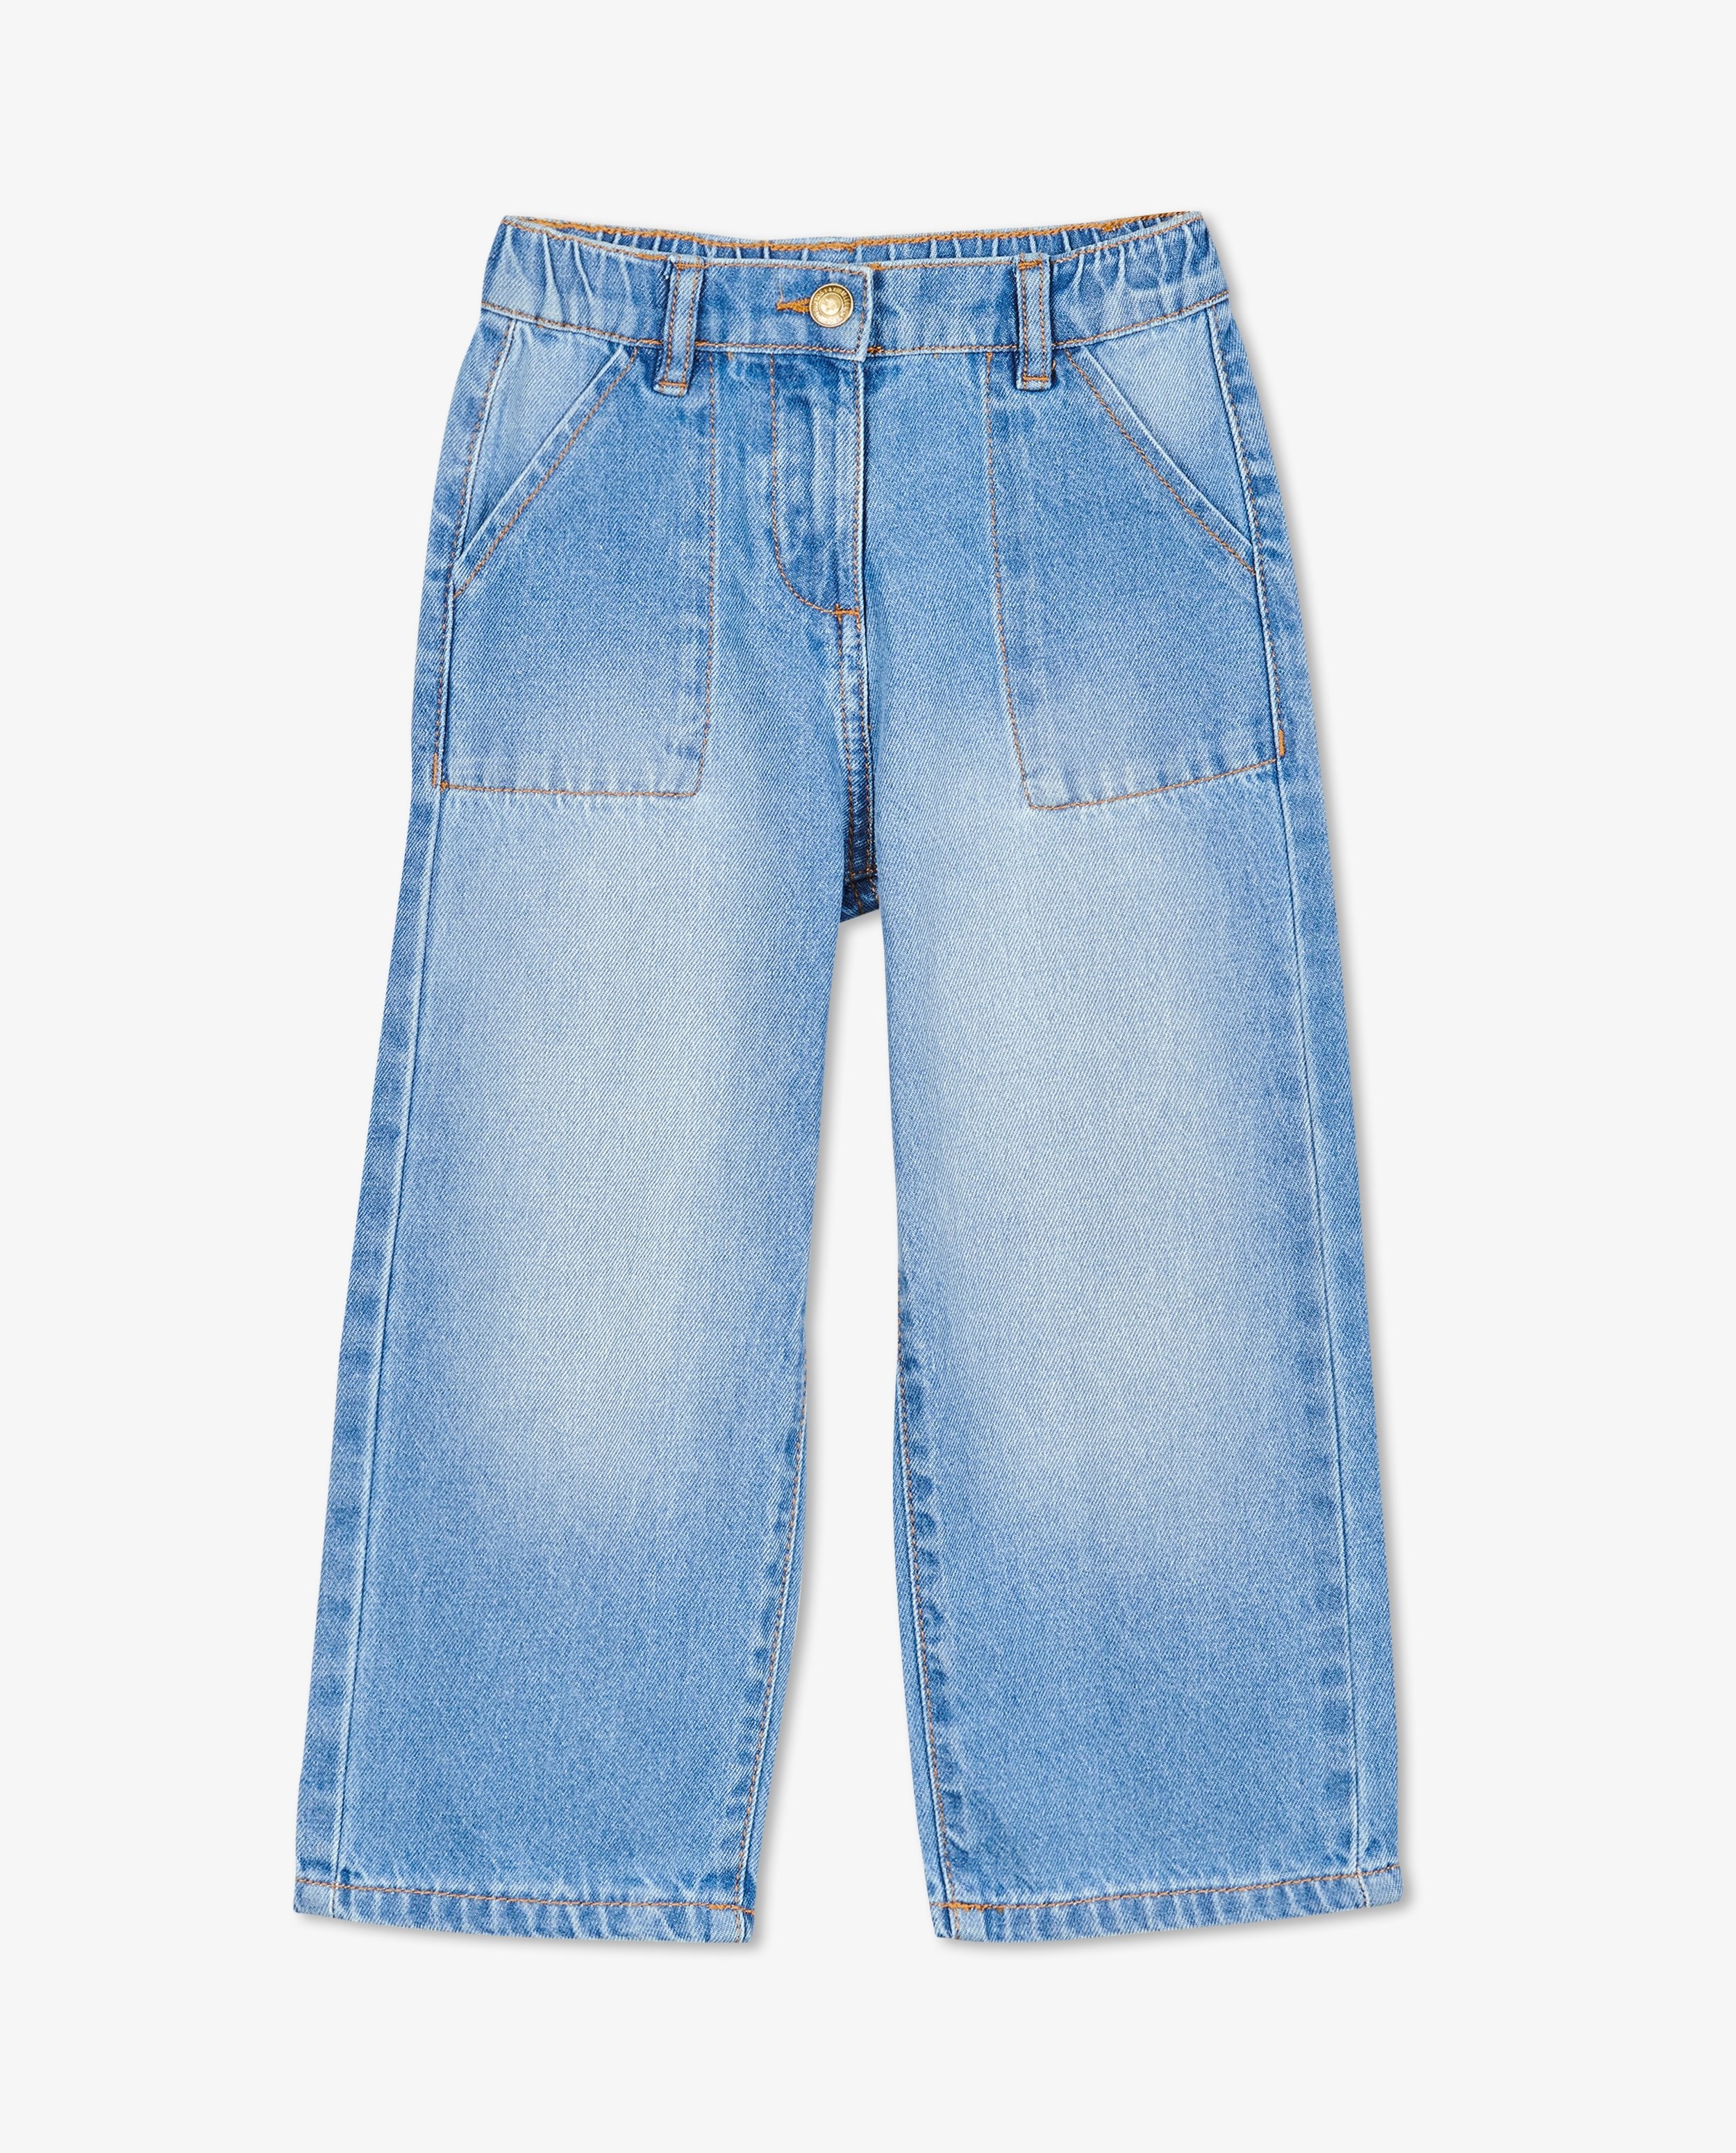 Jeans - Jeans bleu, jupe-culotte